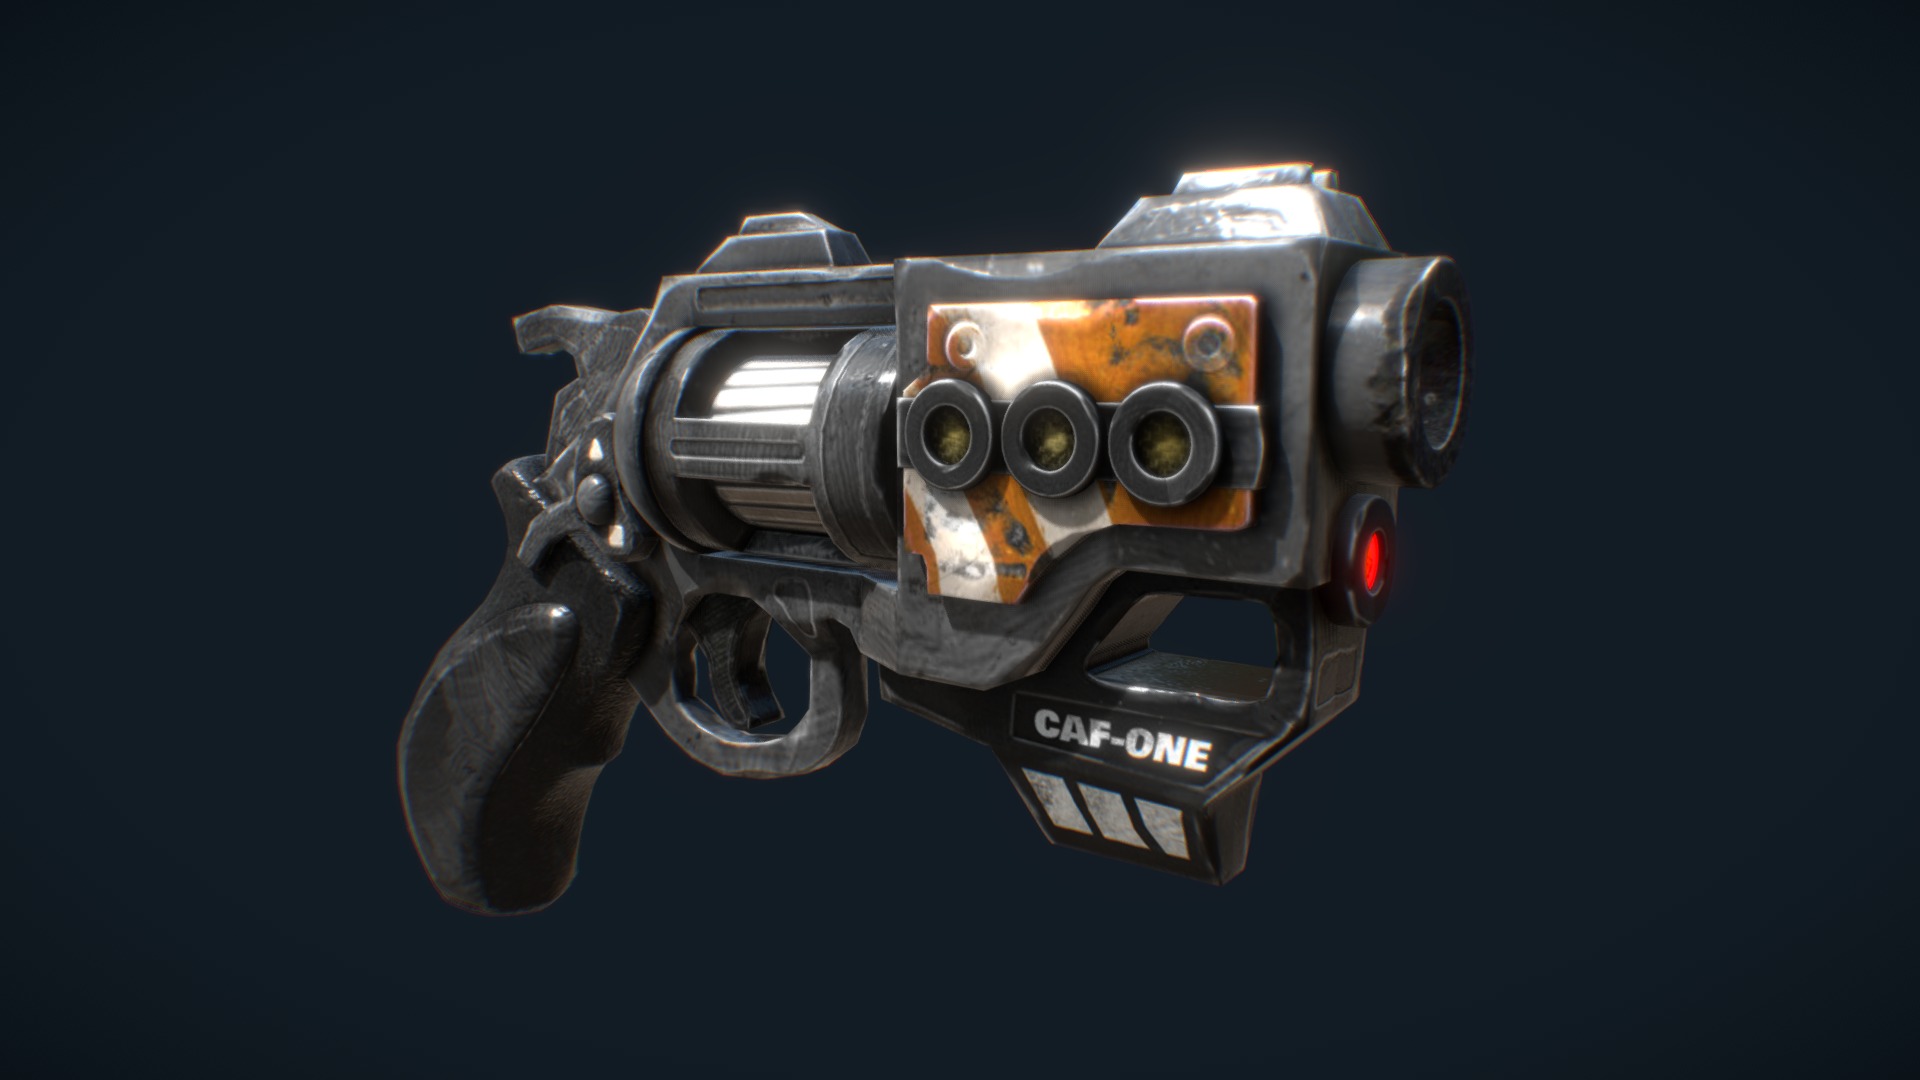 CAF-ONE gun